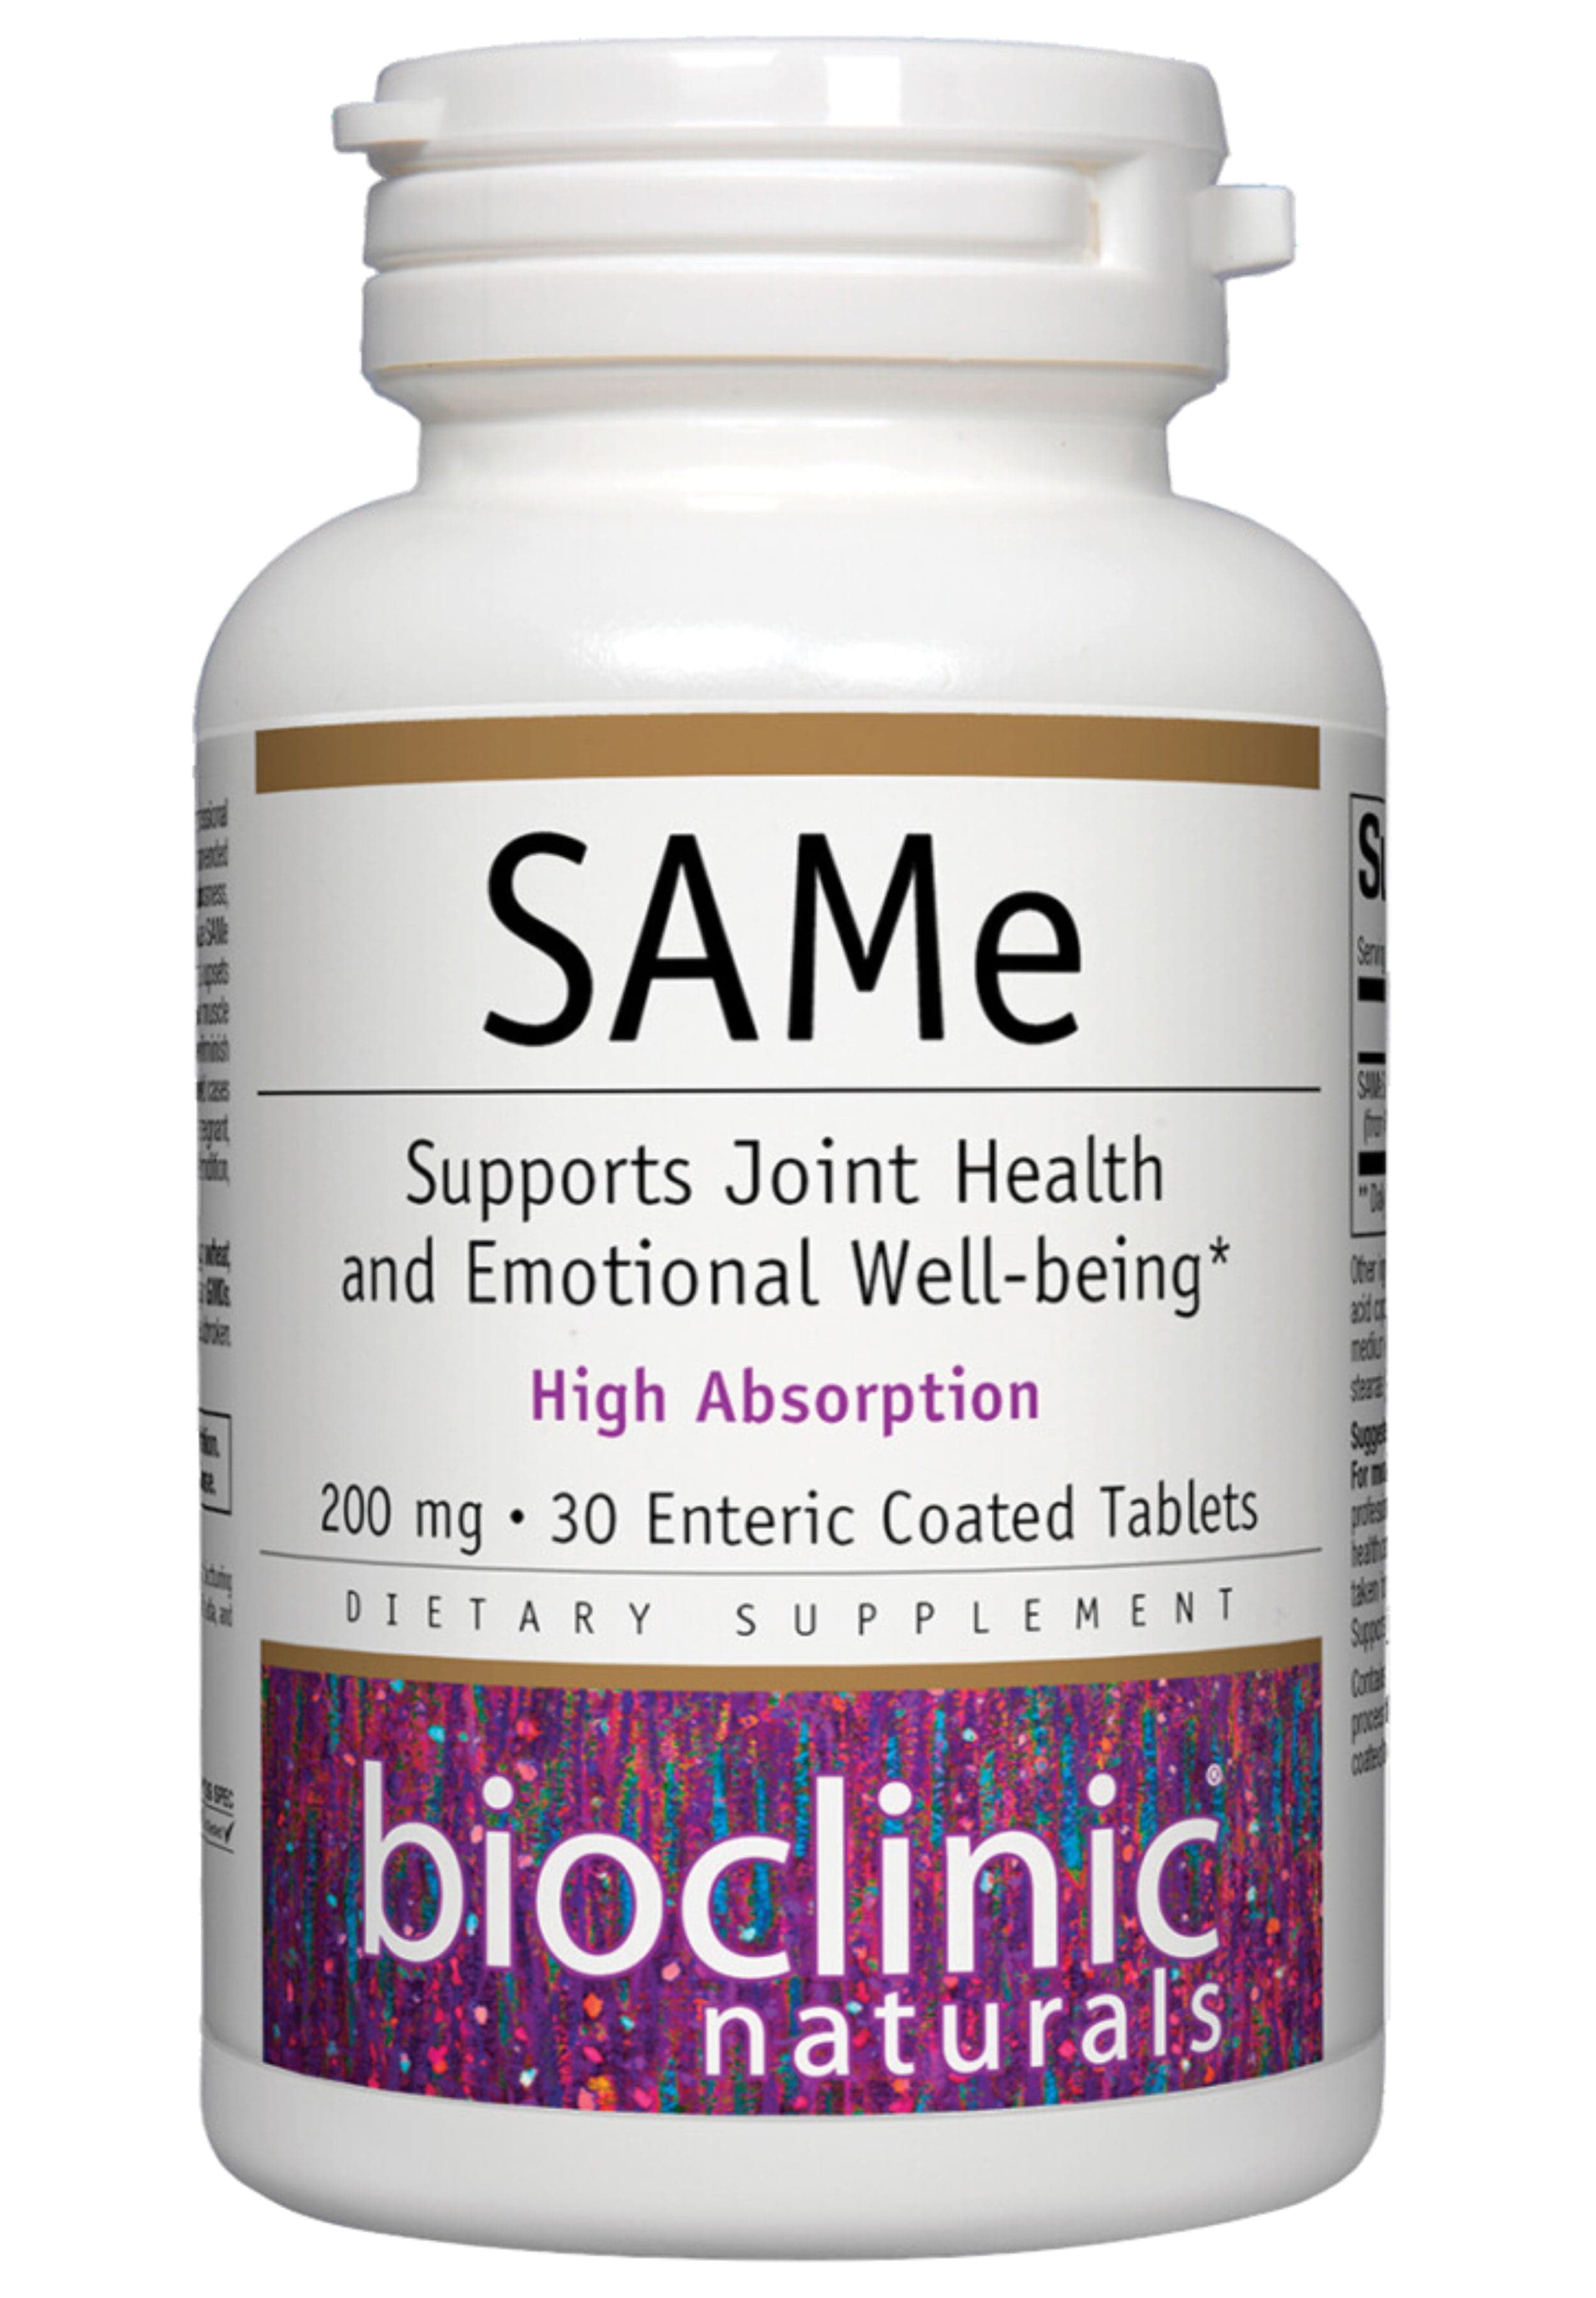 Bioclinic Naturals SAMe